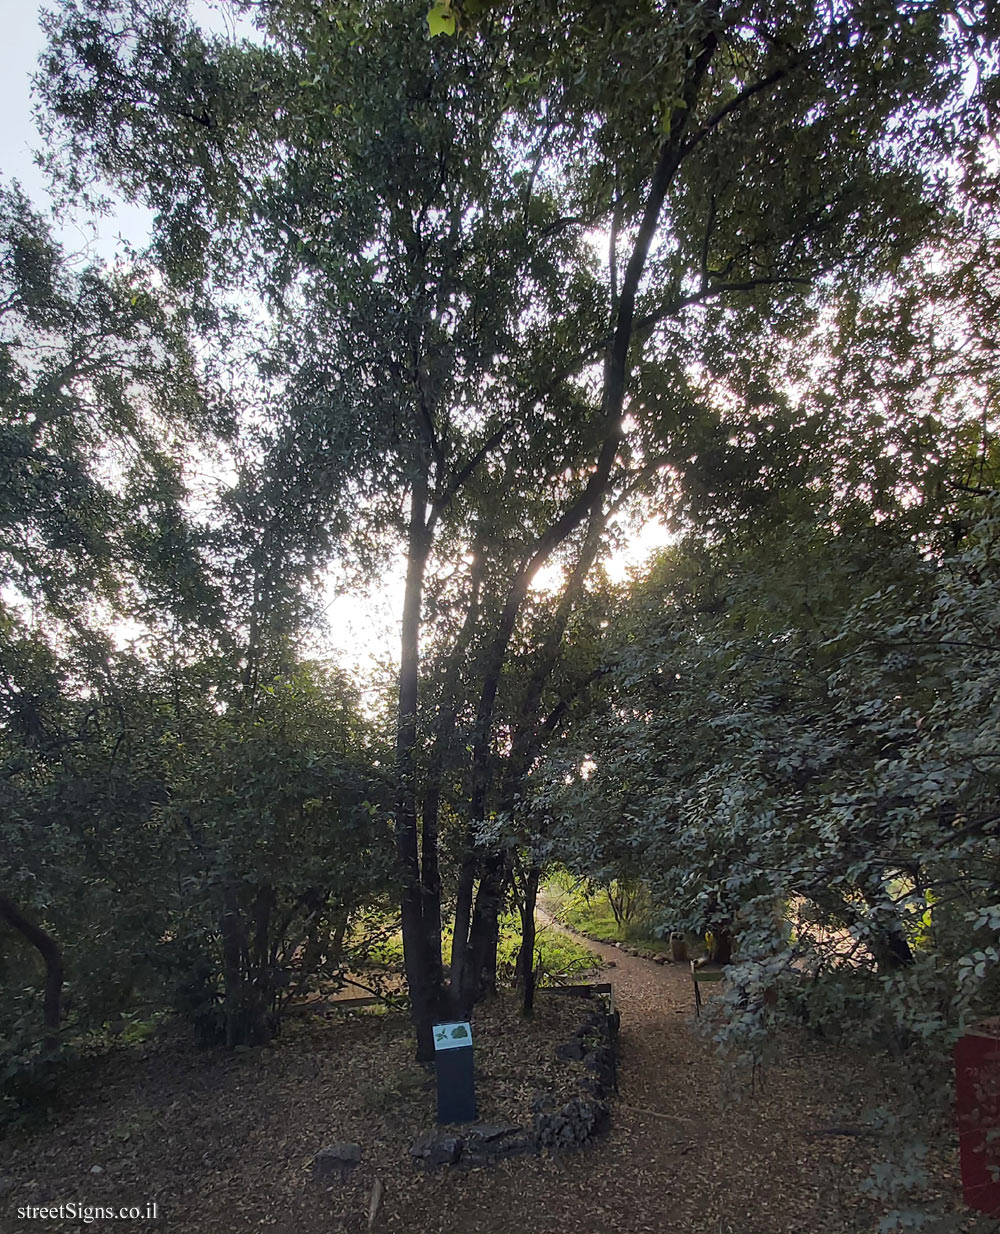 Tel Aviv - Ecological Botanical Garden - Palestine oak - Herzl St 157, Tel Aviv-Yafo, Israel